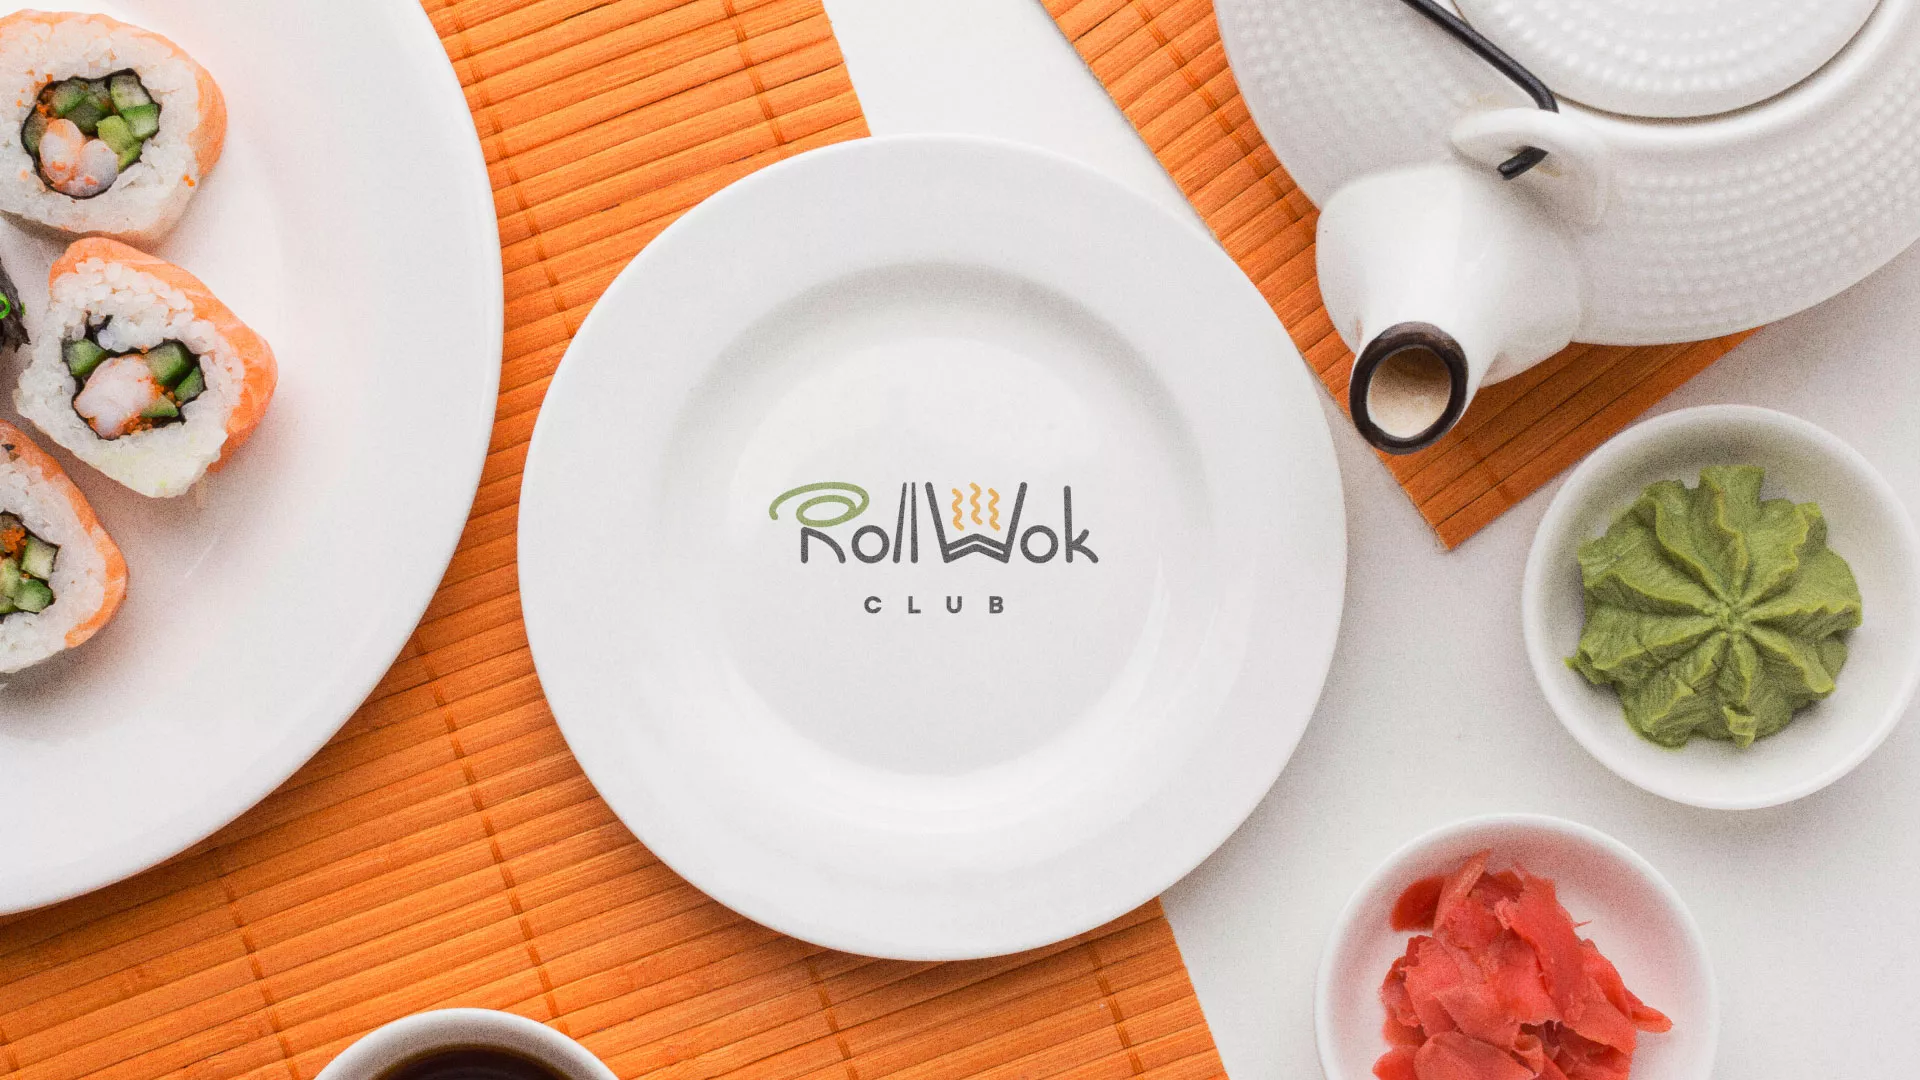 Разработка логотипа и фирменного стиля суши-бара «Roll Wok Club» в Алзамае